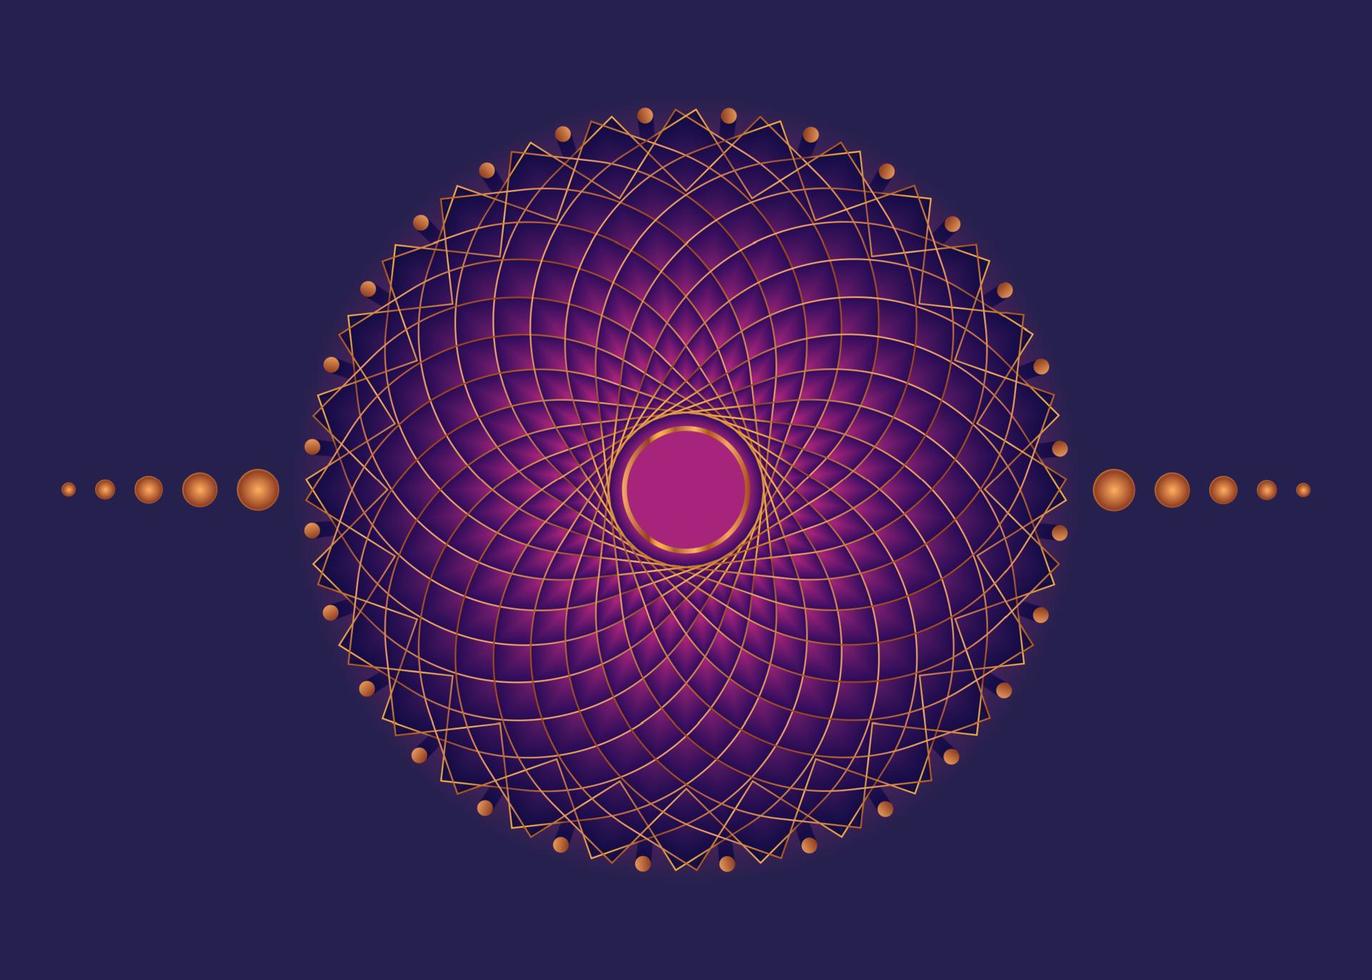 Mandala der heiligen Geometrie, meditatives Kreissymbol aus rosafarbenem Blumengold, geometrisches Logodesign, mystisches religiöses Rad, indisches Chakra-Konzept, Vektorillustration isoliert auf violettem Hintergrund vektor